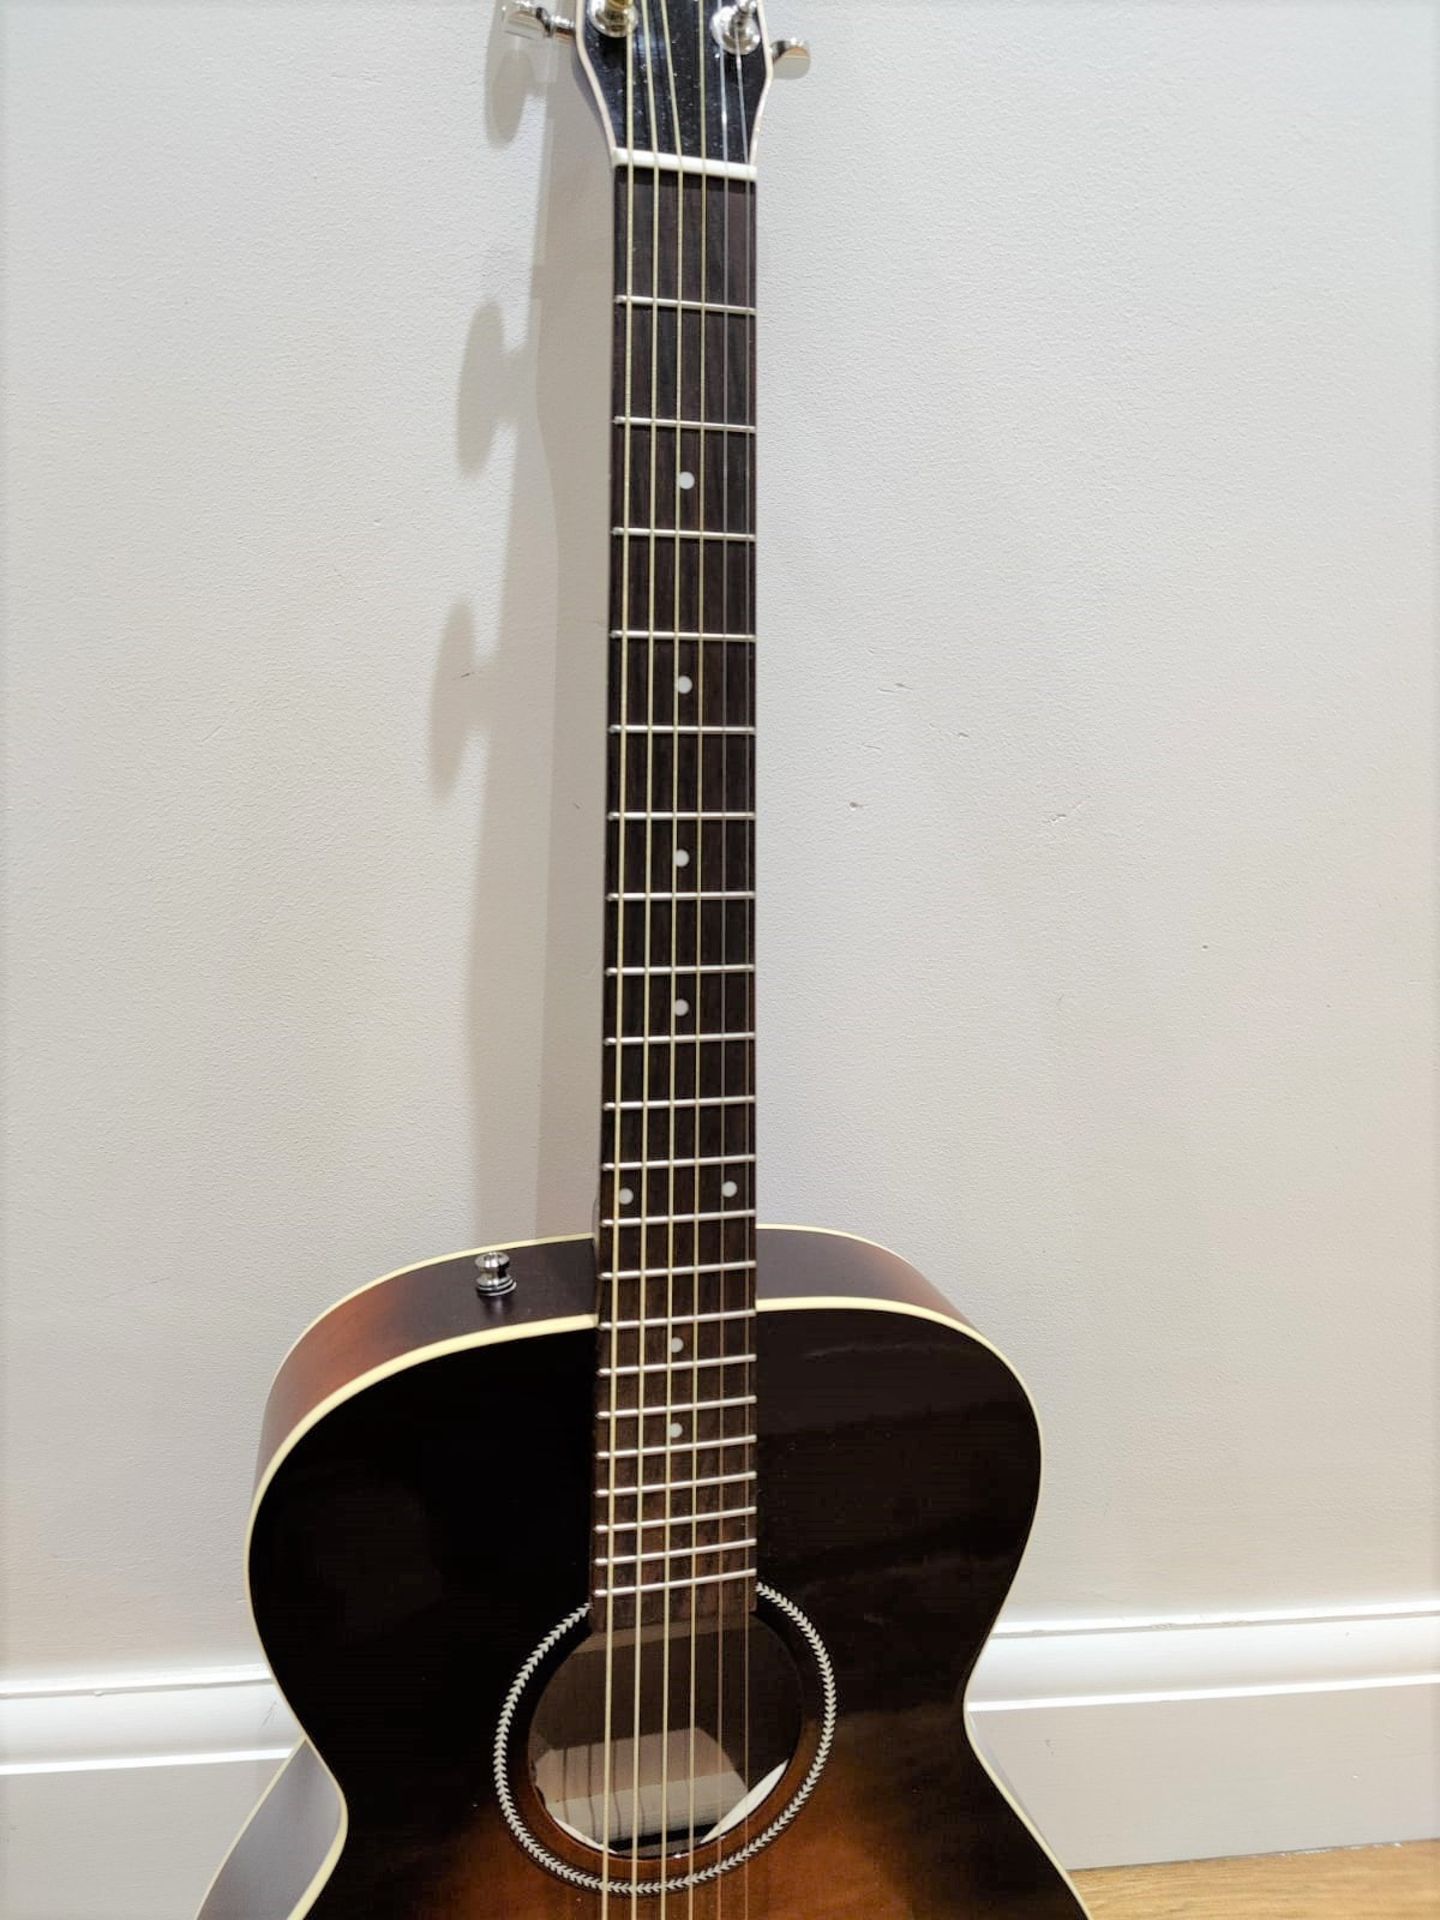 1 x Seagull S6 Original Slim Burnt Umber Dreadnaught Electro Acoustic Guitar - RRP £600 - Very - Image 7 of 14